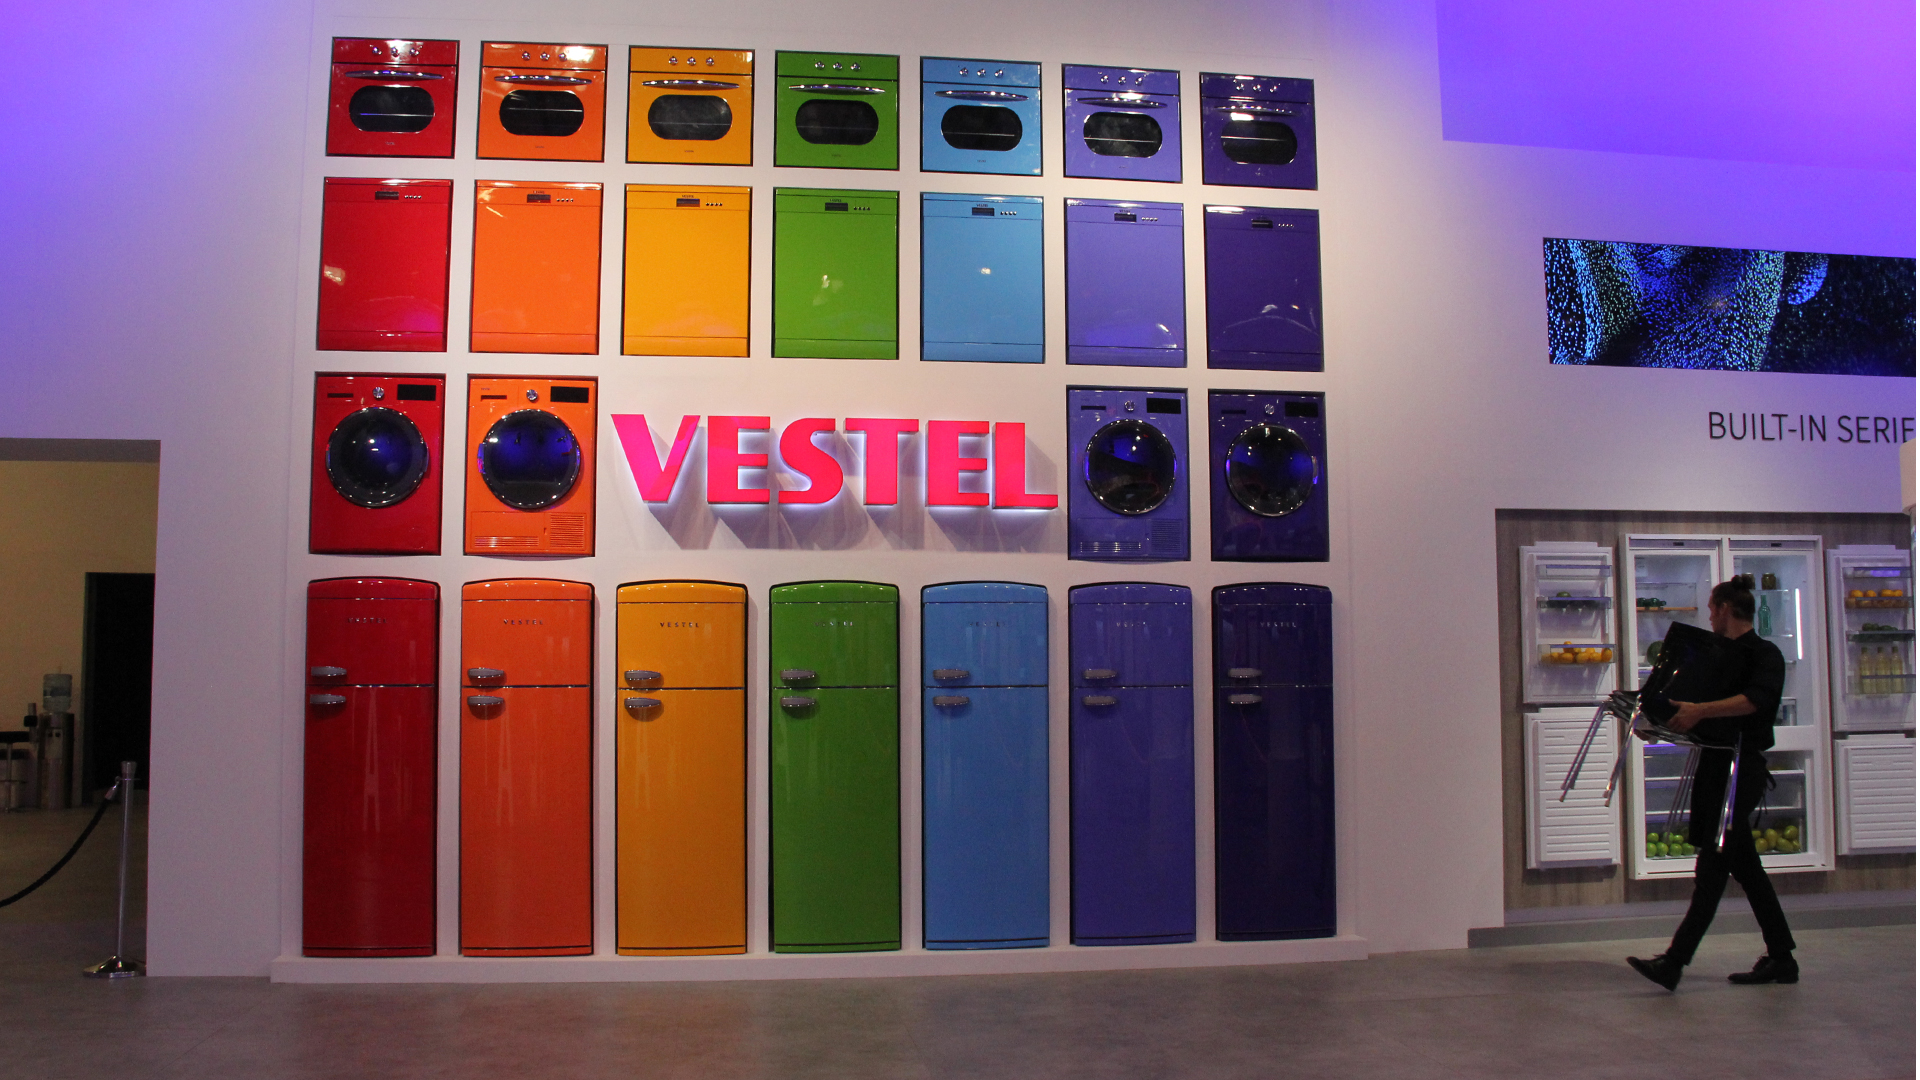 来自土耳其VRSTEL的彩色消费日电子产品墙壁